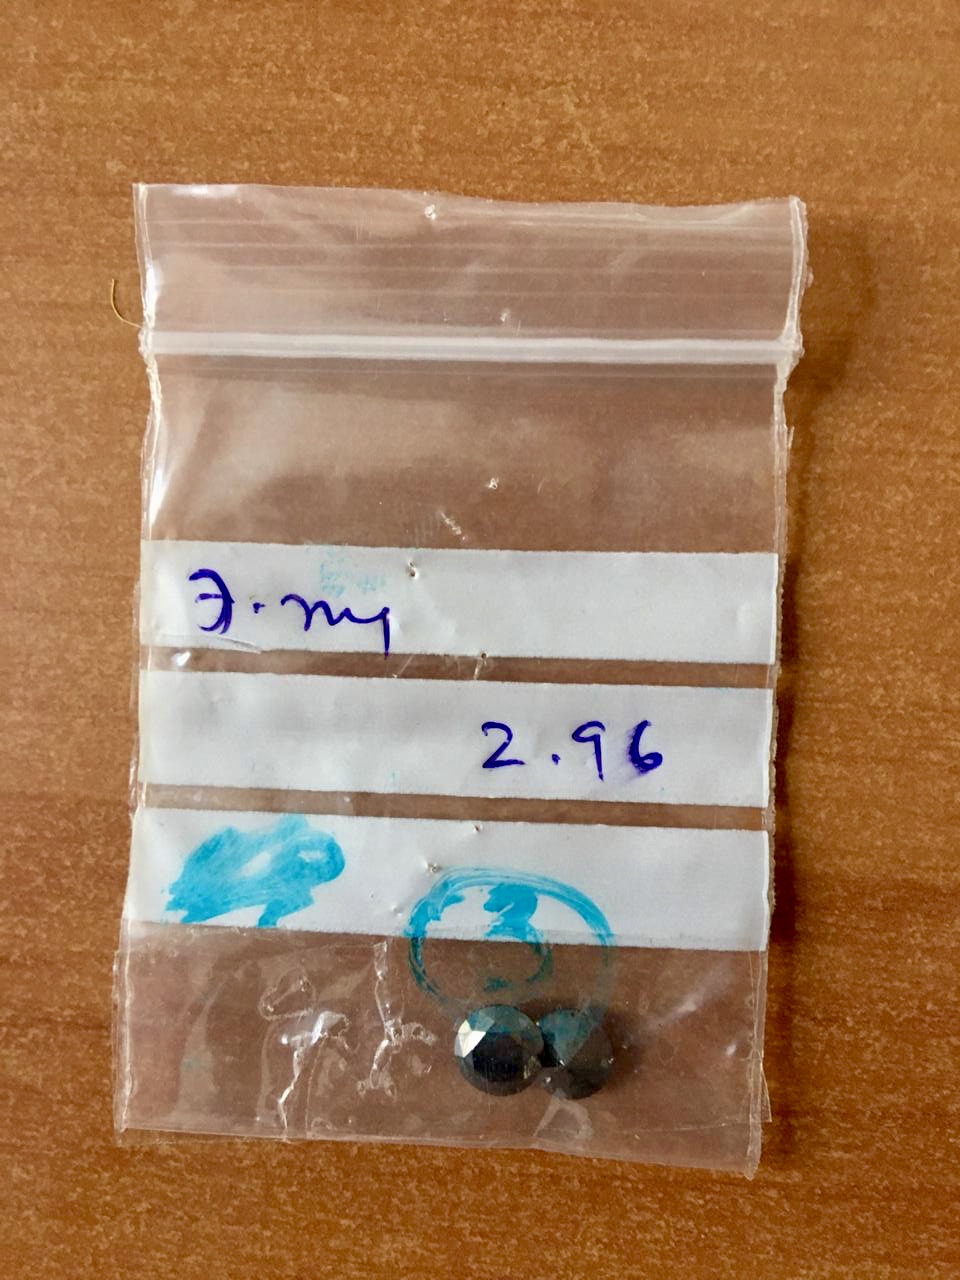 В посылке из Индии киевские таможенники обнаружили черные бриллианты общим весом 90 карат (фото)